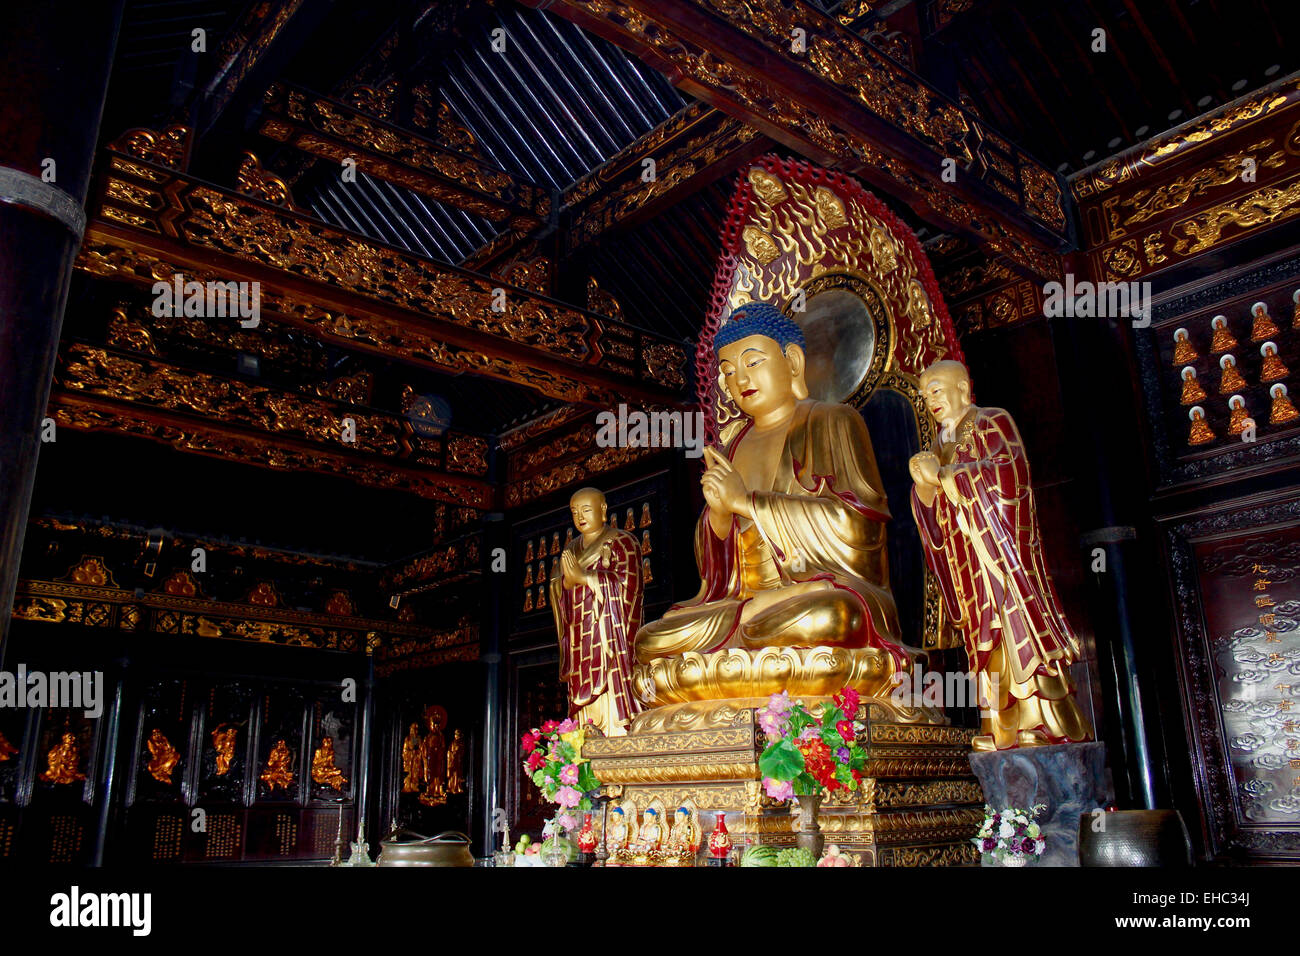 Photographie d'un Bouddha en or entouré de centaines de petits Bouddhas dans le temple de la Grande Pagode de l'Oie Sauvage, Xi'an. Banque D'Images